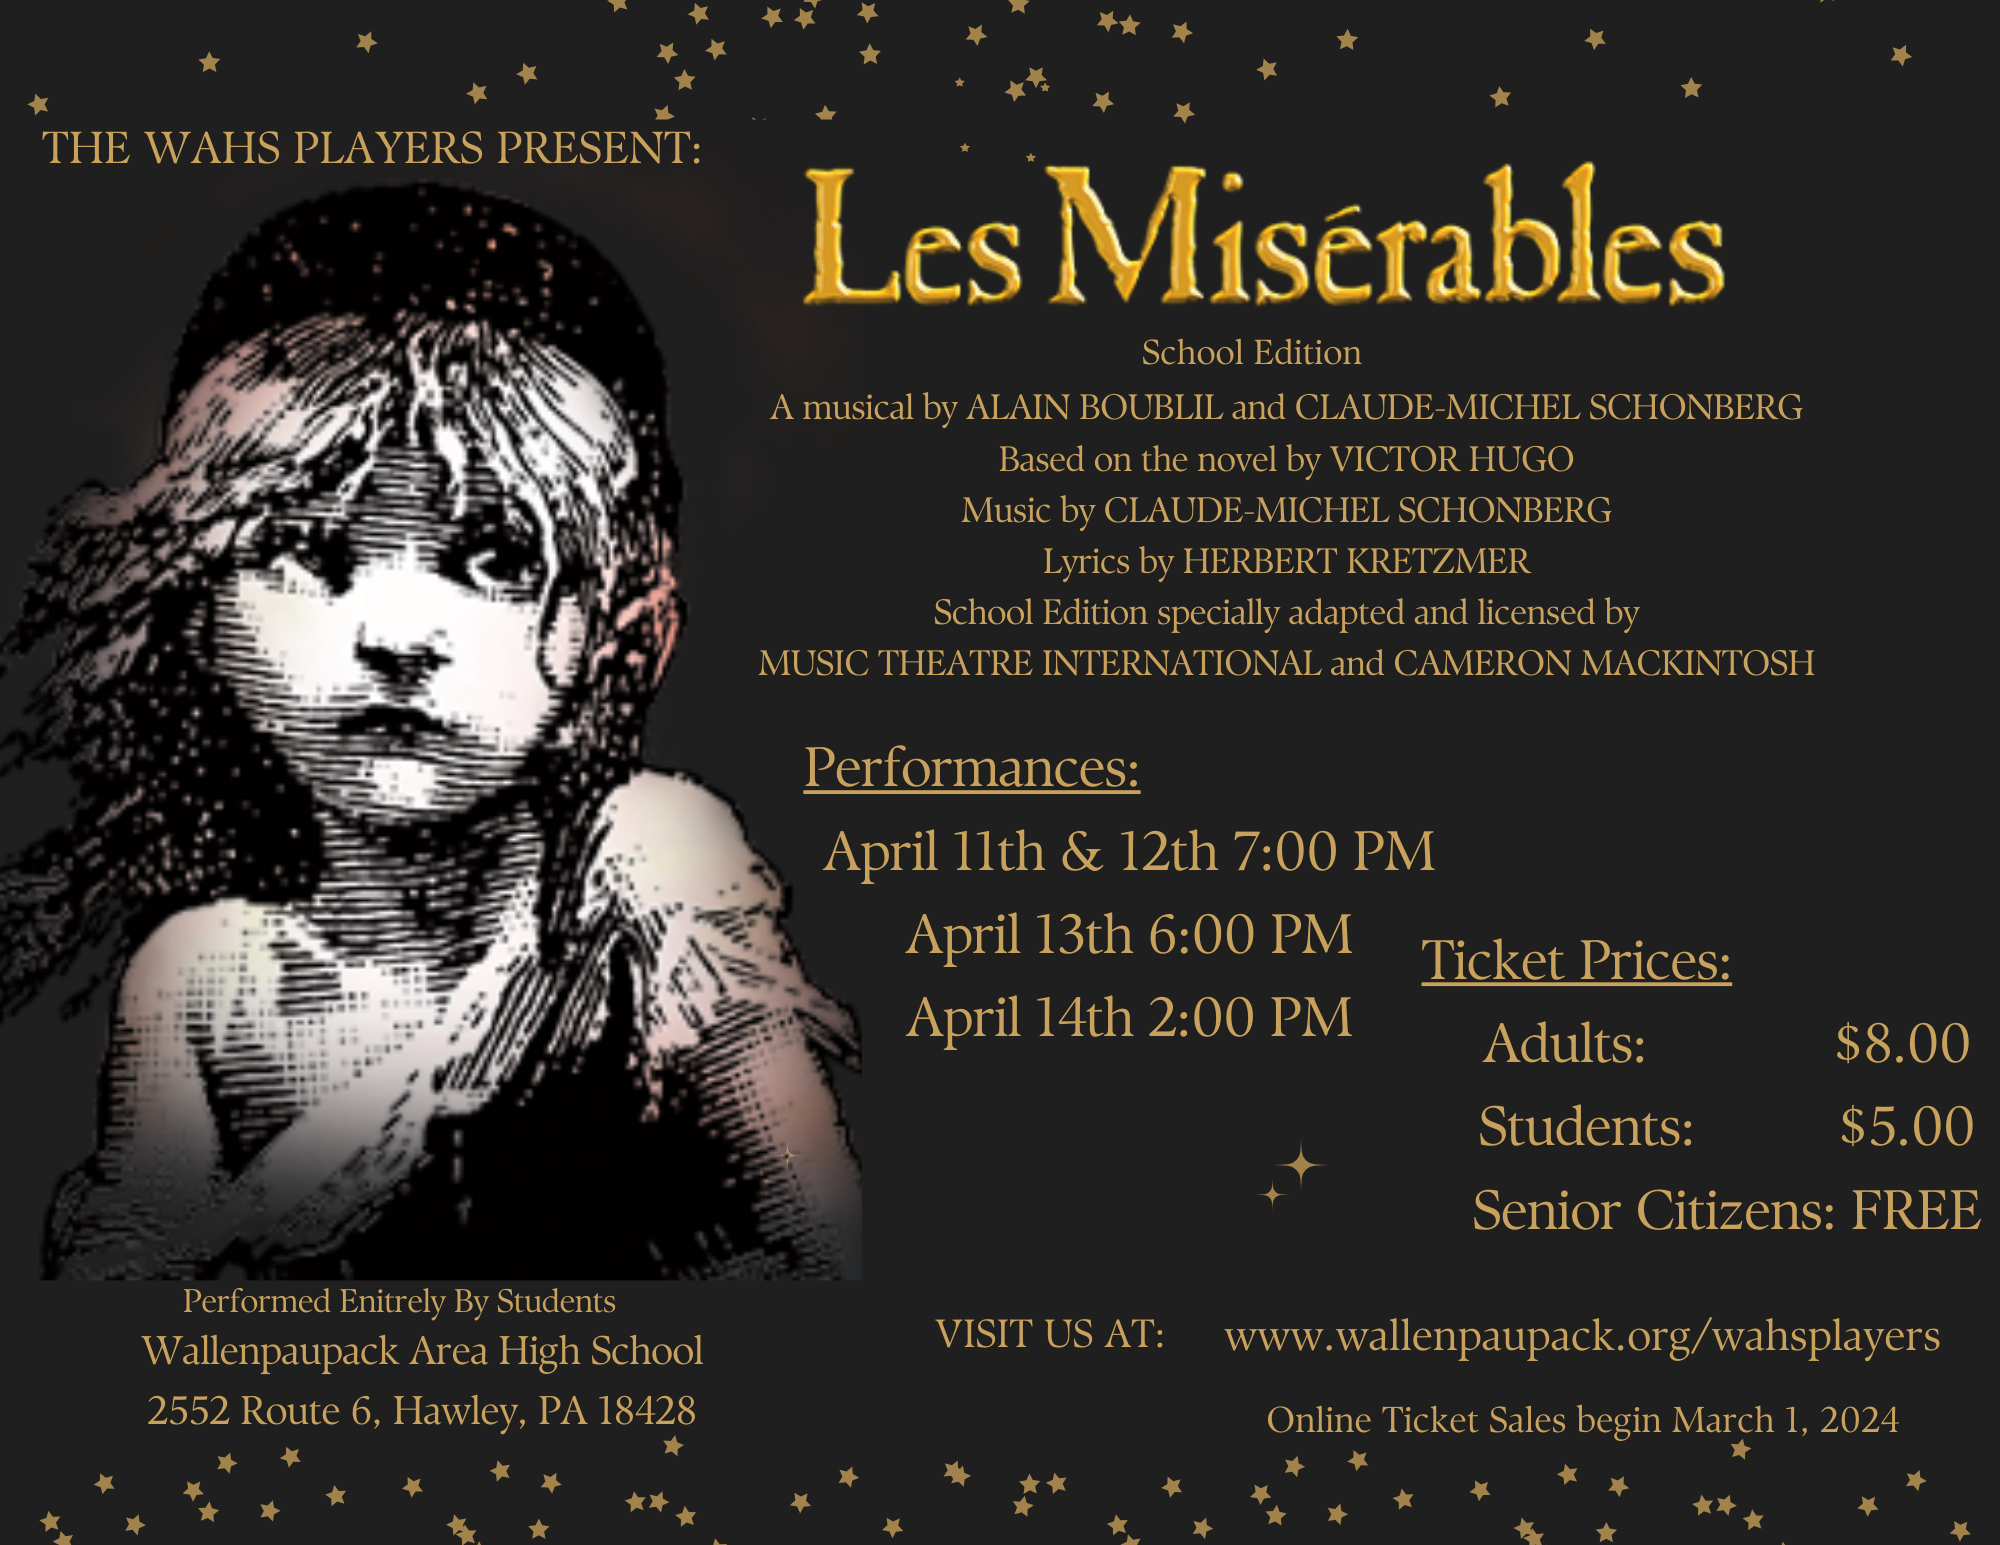 WAHS Players present 'Les Misérables'